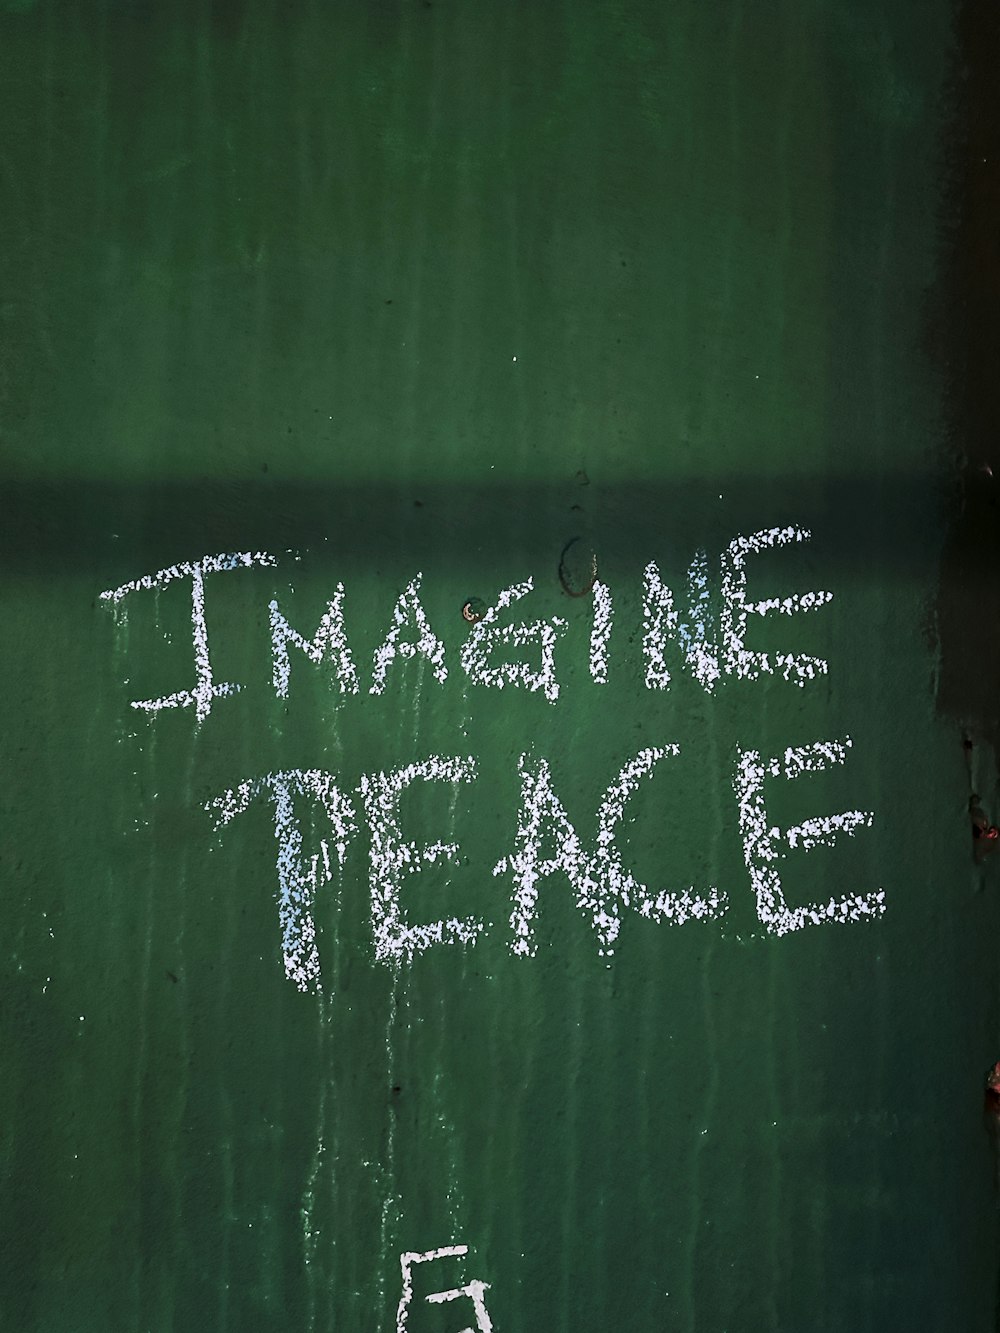 緑の壁に描かれたチョークで「平和を想像してみて」と書かれた絵